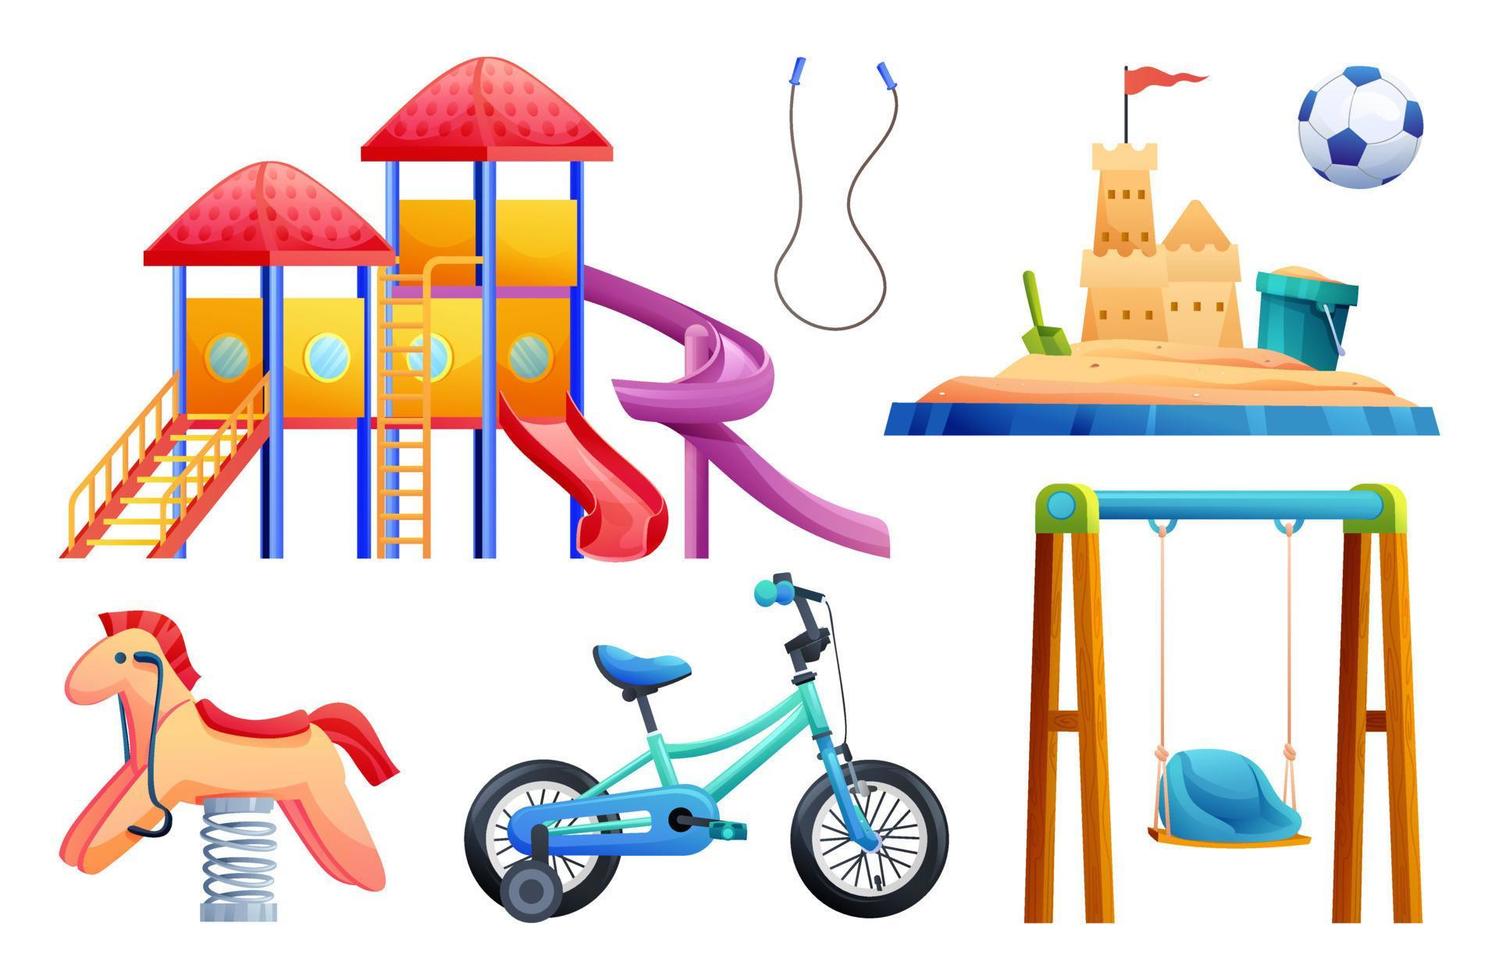 ensemble d'équipements de jeux pour enfants avec toboggan, balançoire, bac à sable, vélo et jouets illustration de dessin animé vecteur